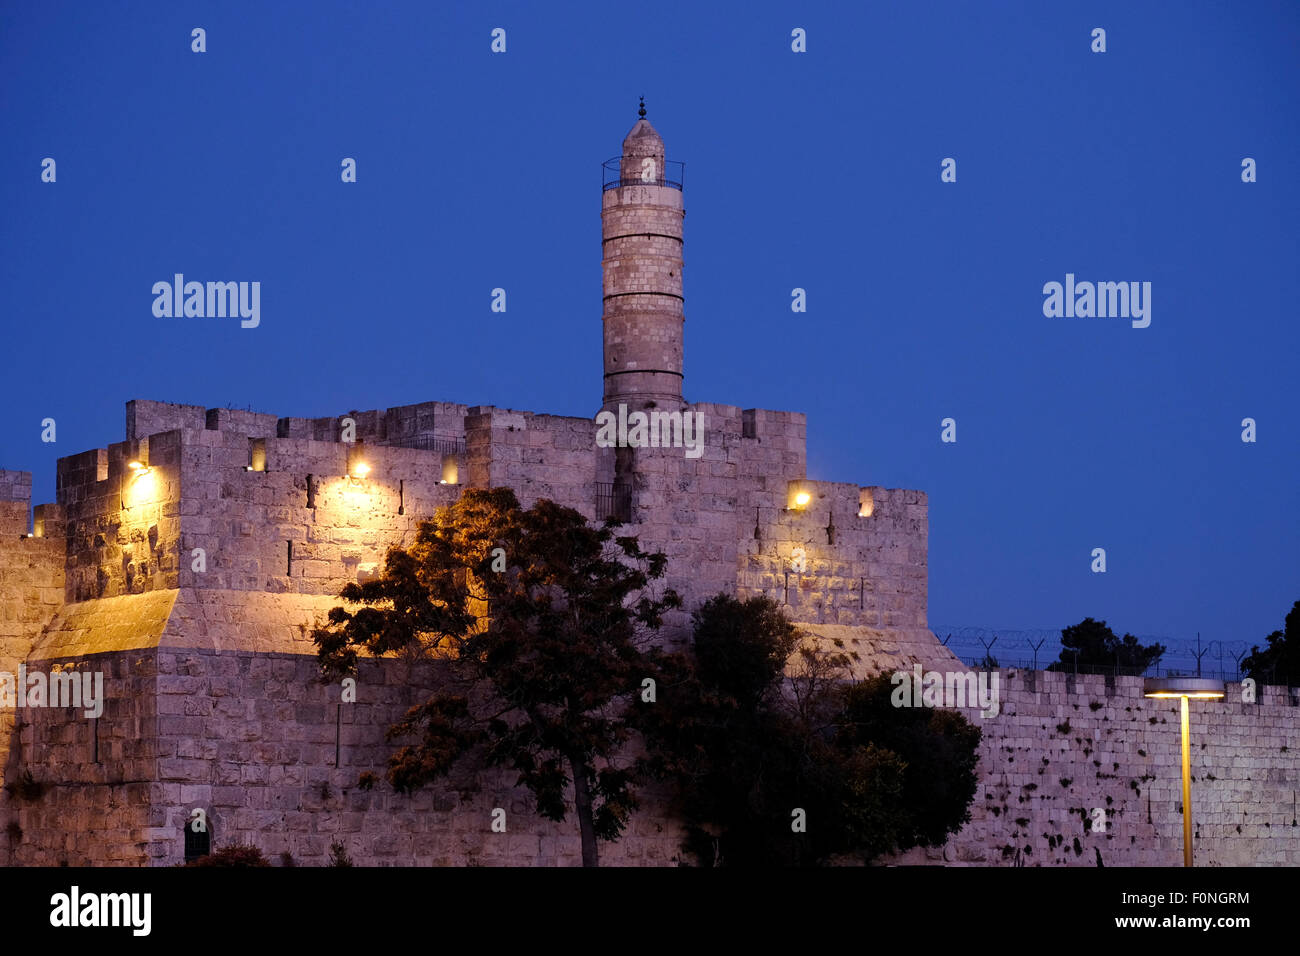 La torre fortificada de David, también conocida como la ciudadela de Jerusalén y las murallas otomanas ciudad vieja Jerusalén oriental, Israel Foto de stock